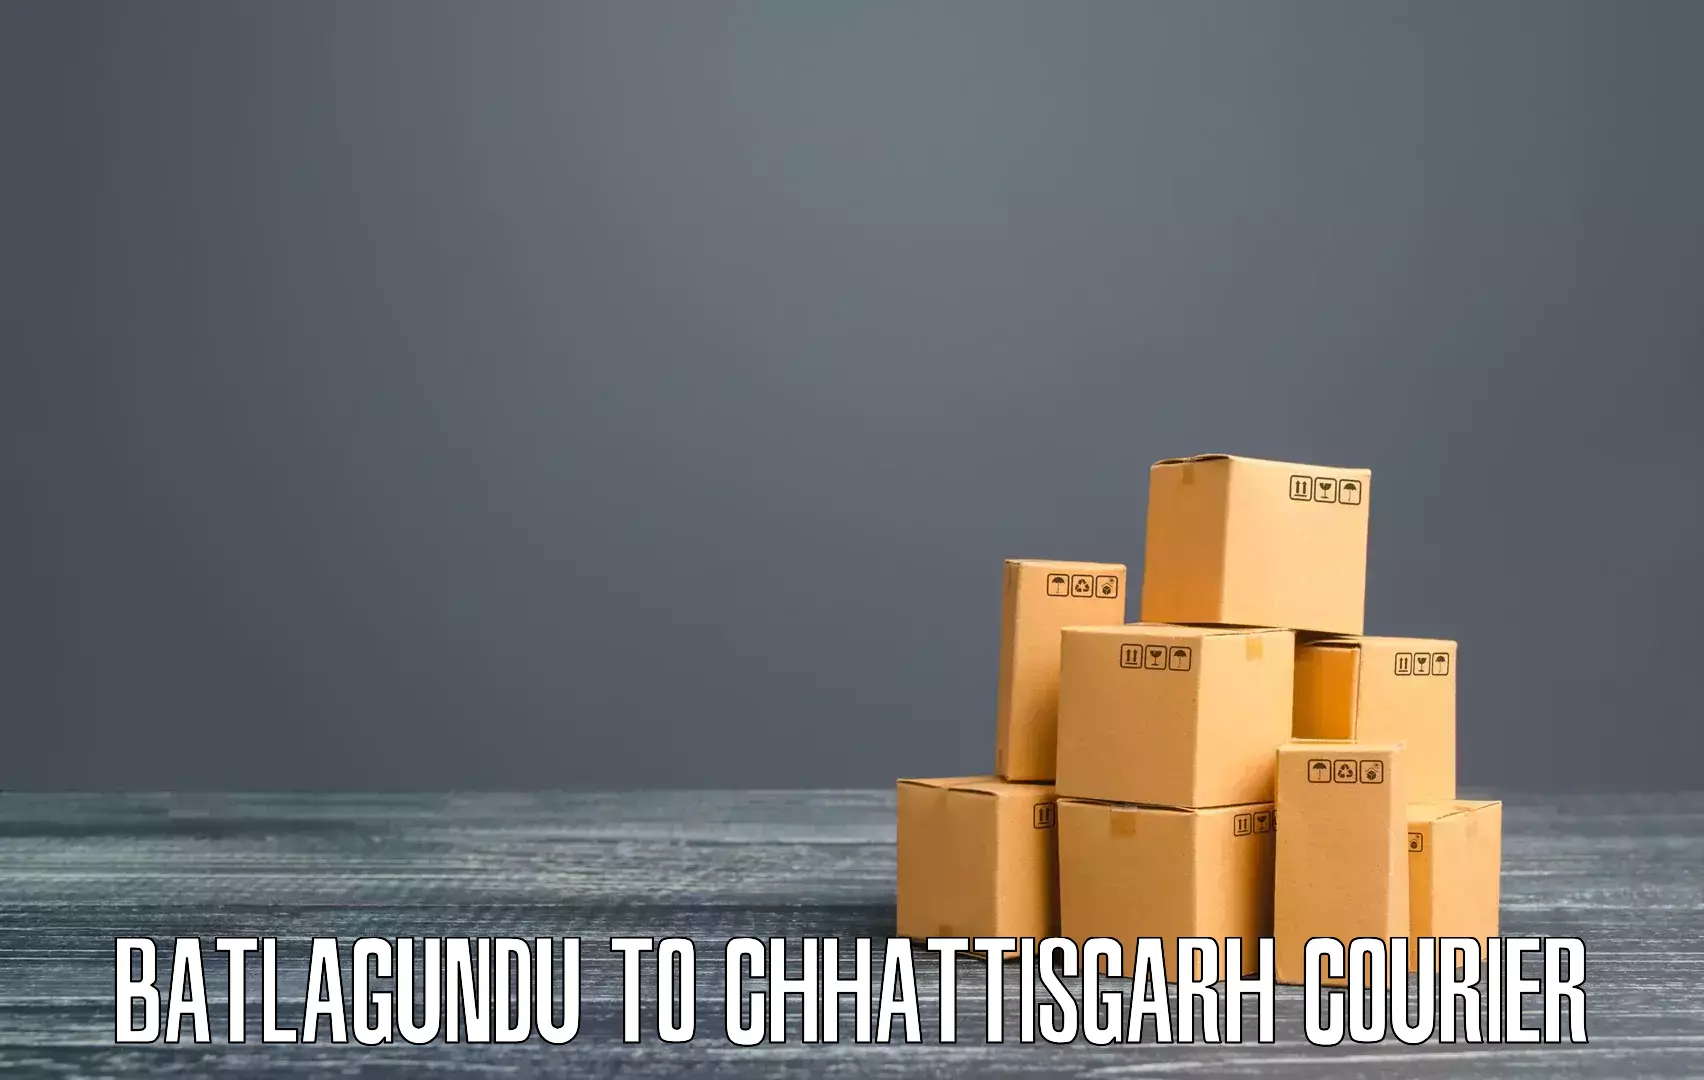 Large-scale shipping solutions Batlagundu to Pathalgaon